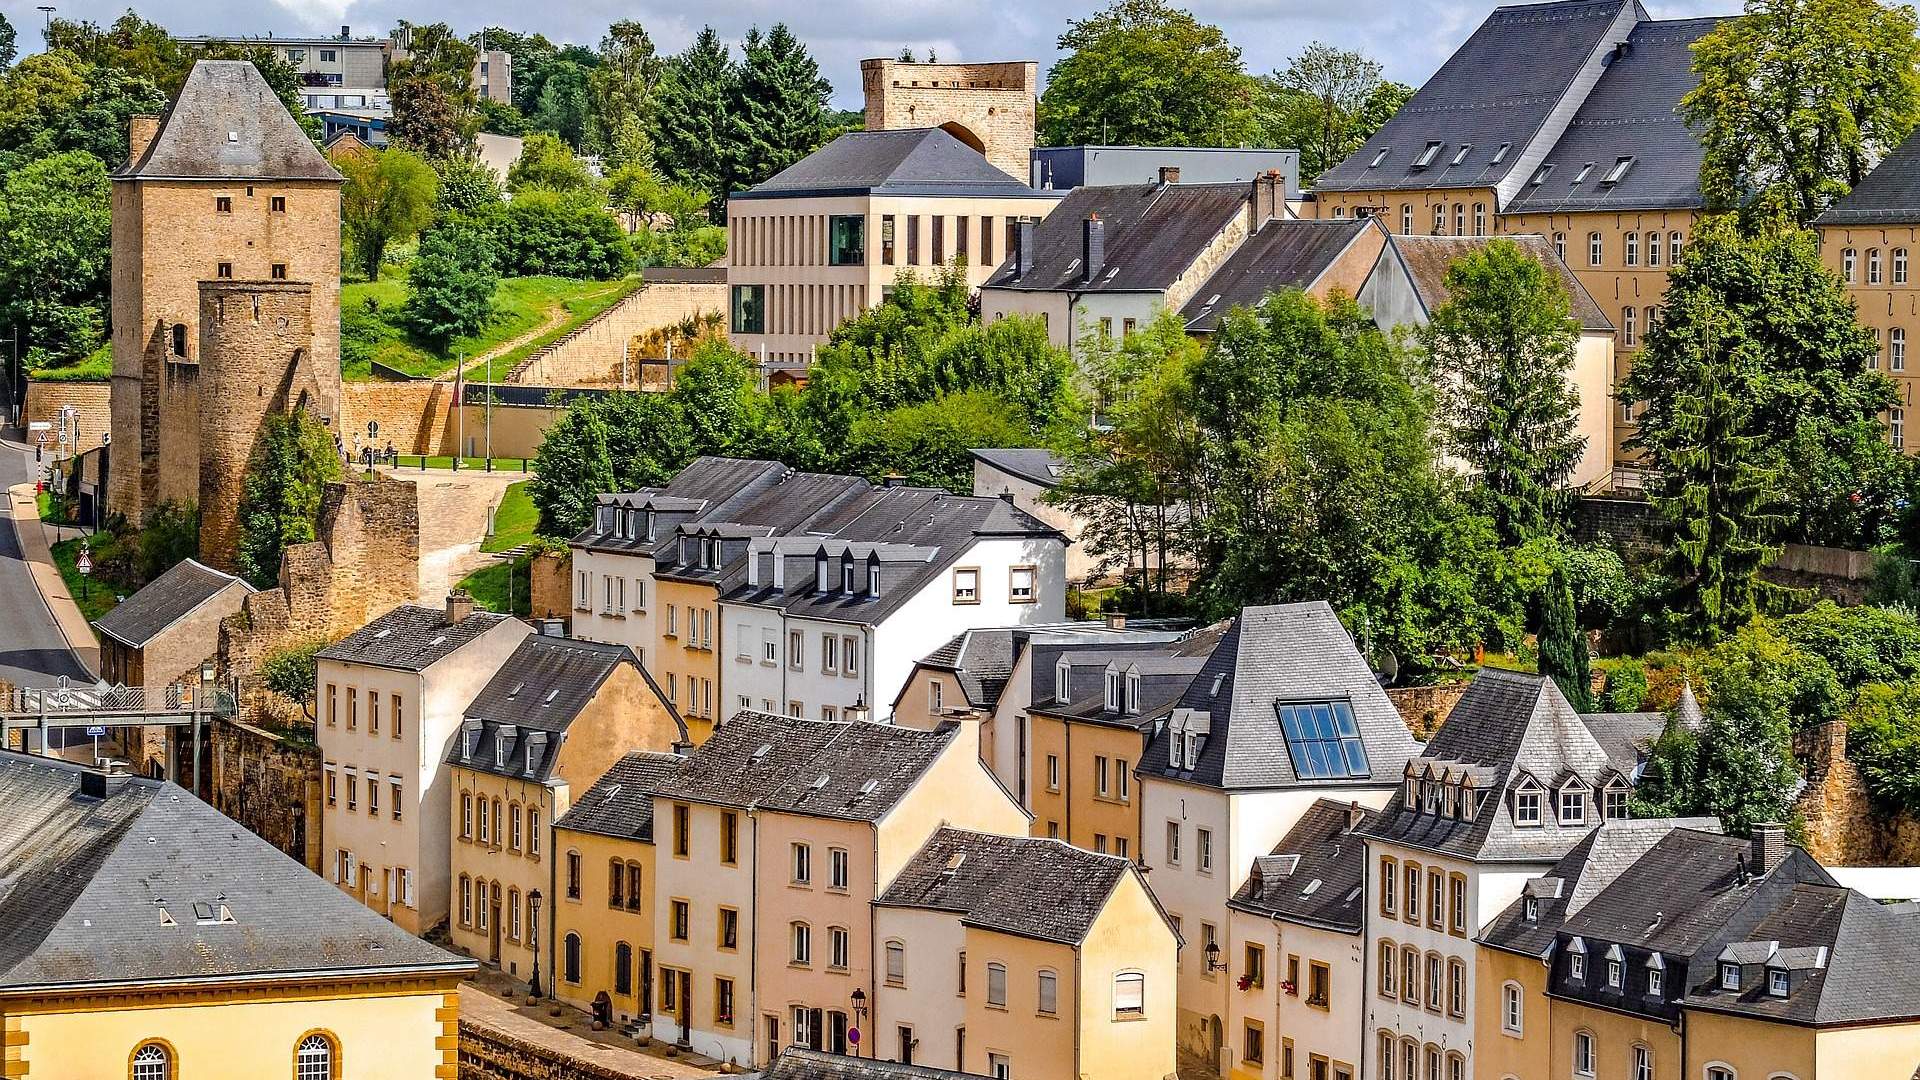 достопримечательности в люксембурге